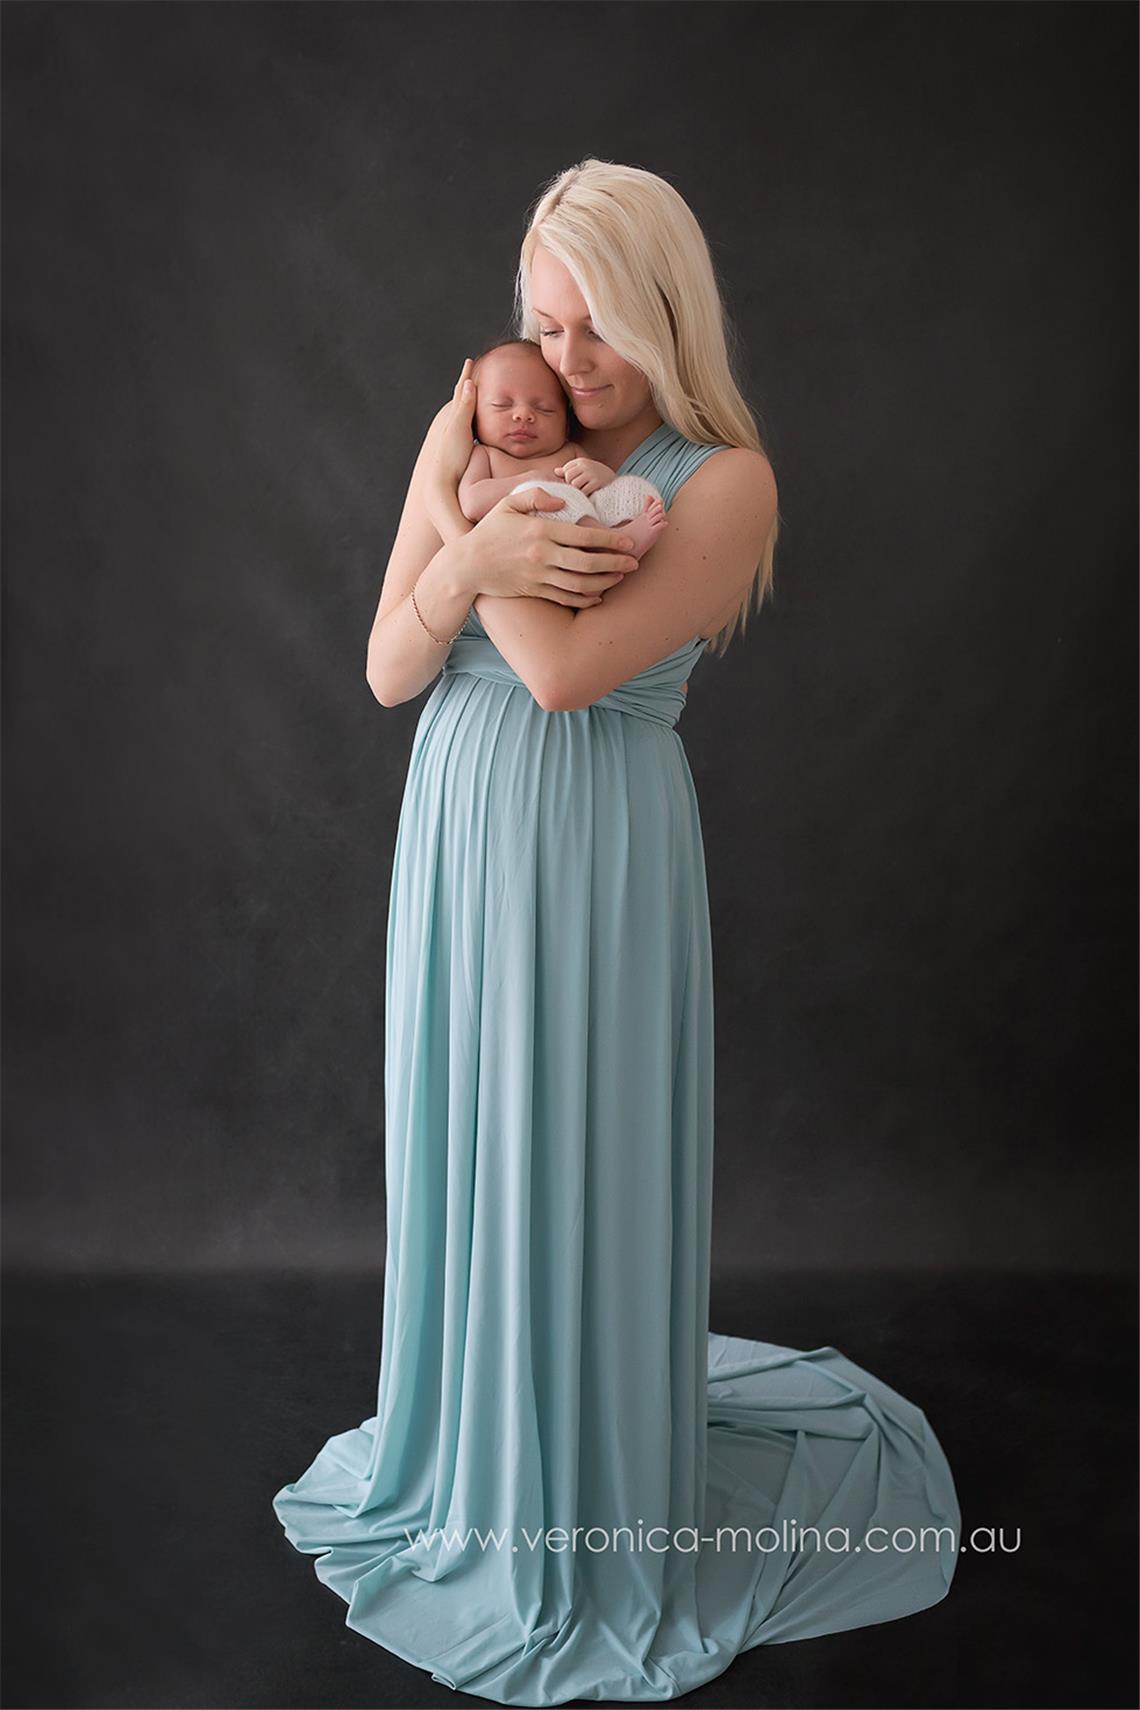 Newborn baby photographer Brisbane - Photo 18